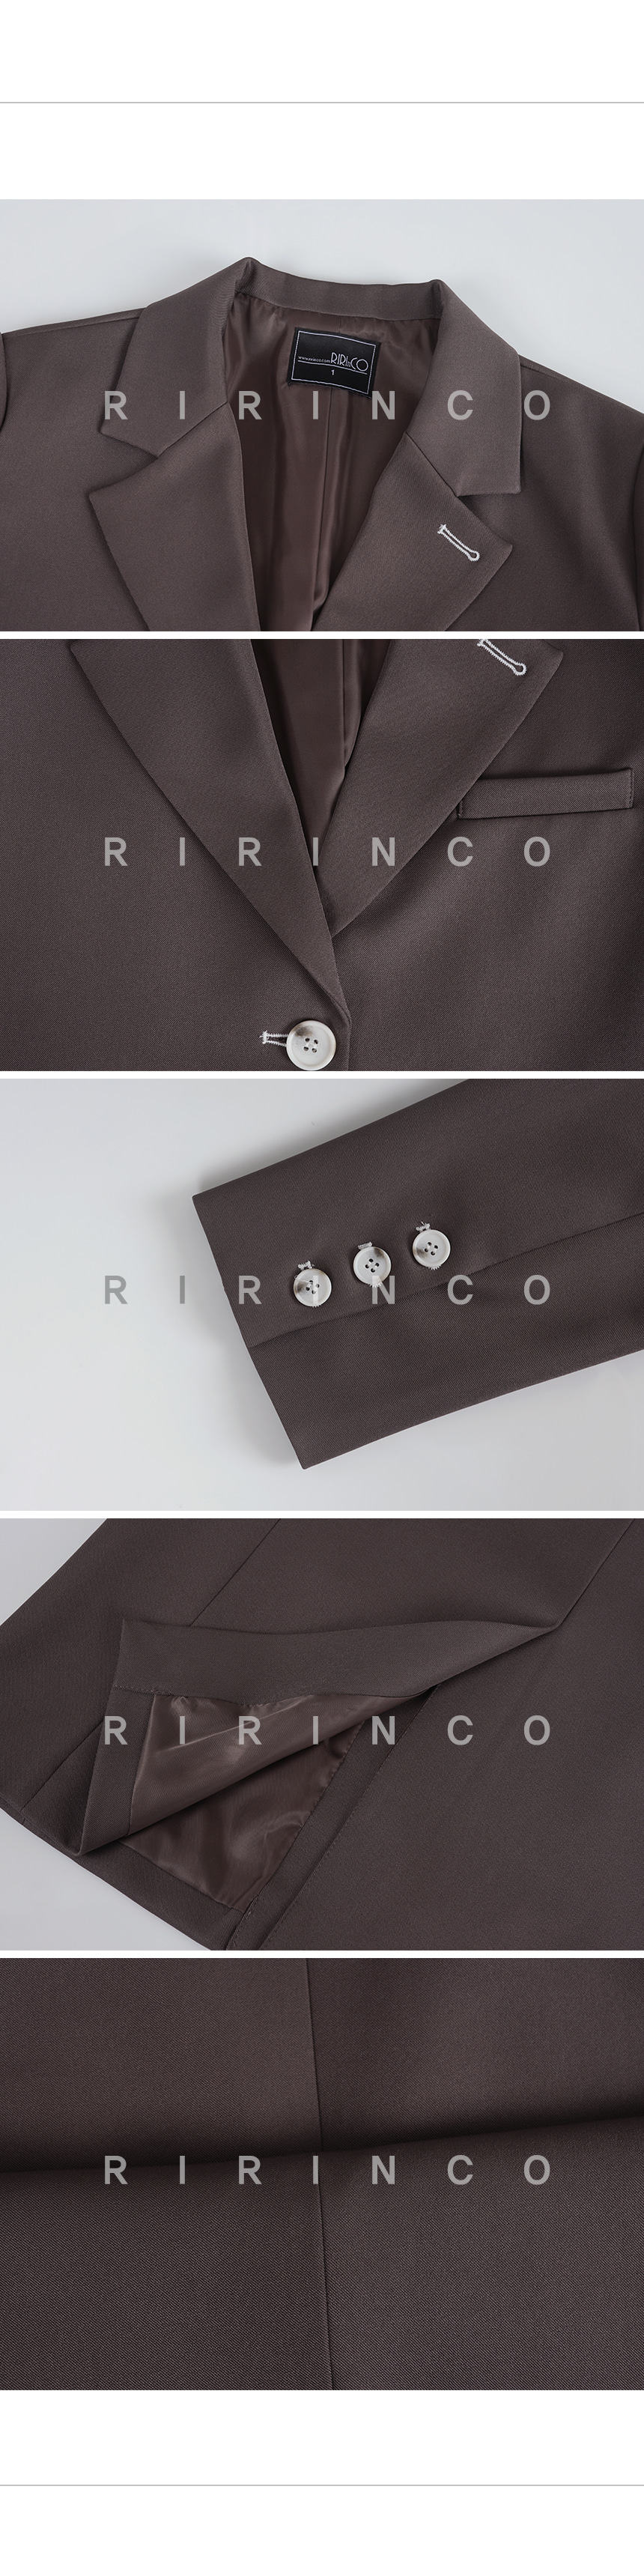 RIRINCO 配色シングルボタンテーラードジャケット